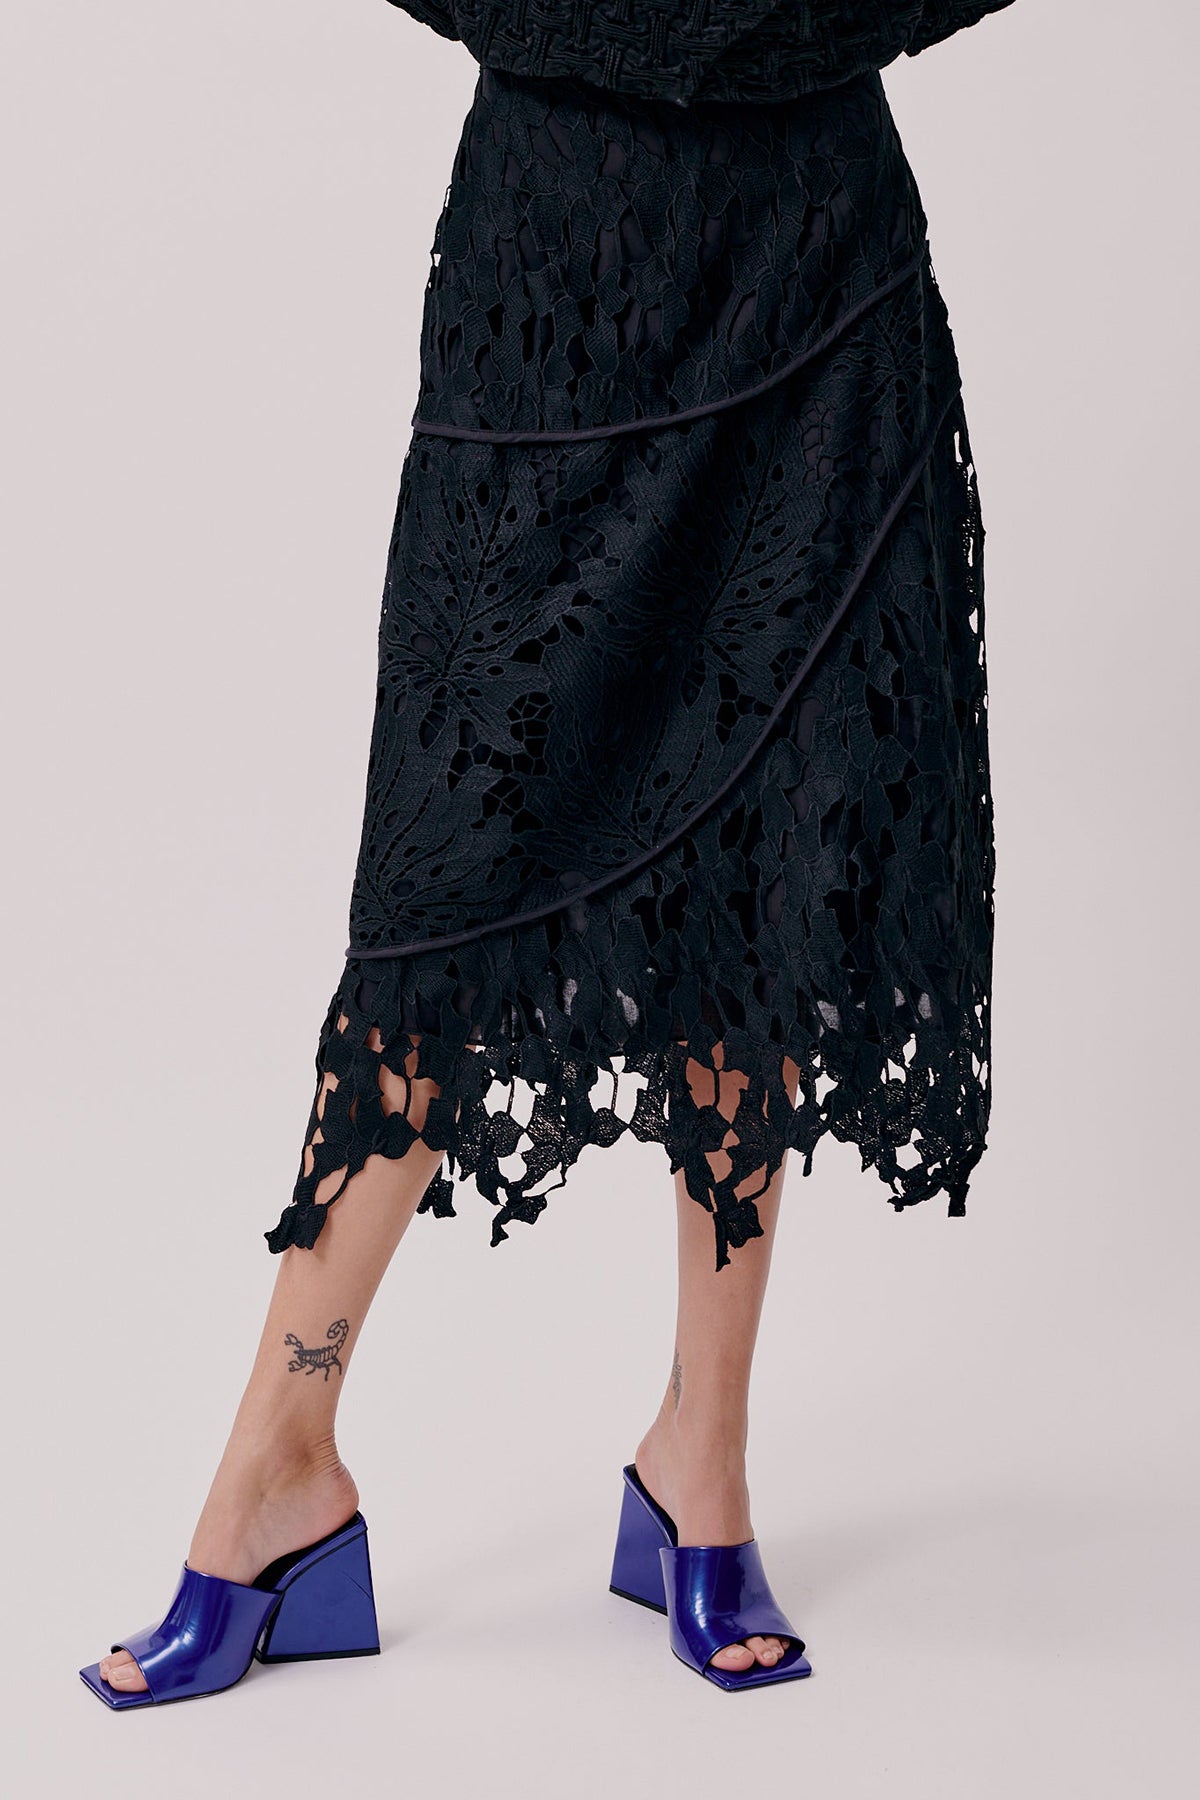 Chloe Skirt - Black Heavy Lace by Hofmann Copenhagen